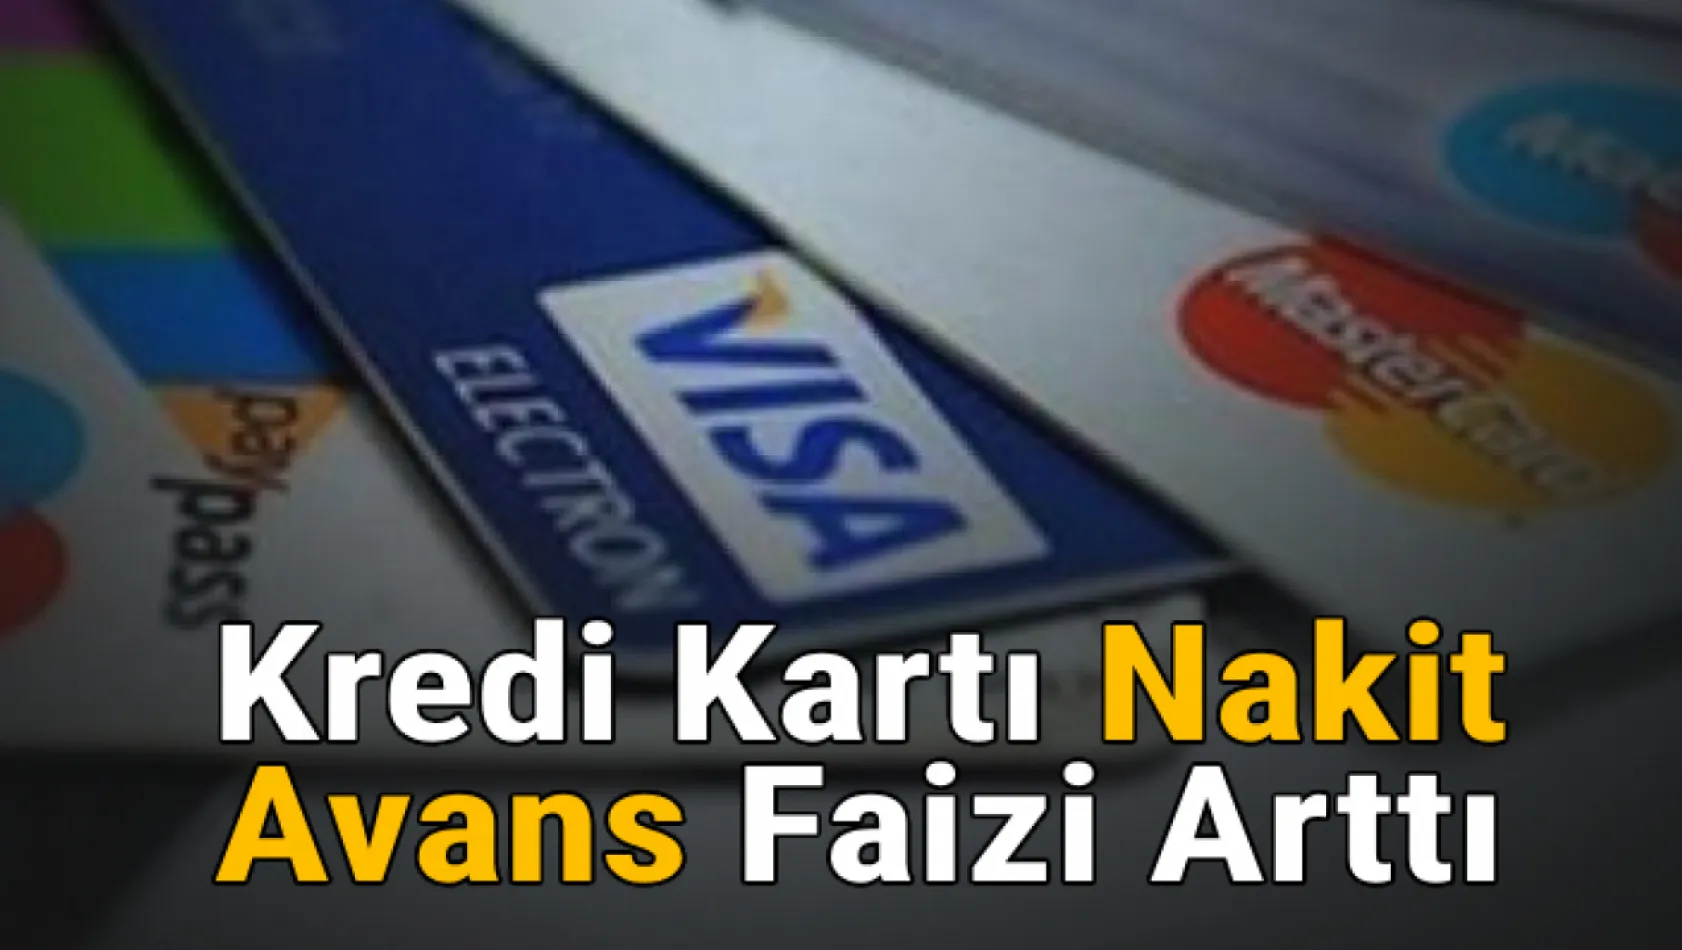 Kredi kartı nakit avans faizi arttı